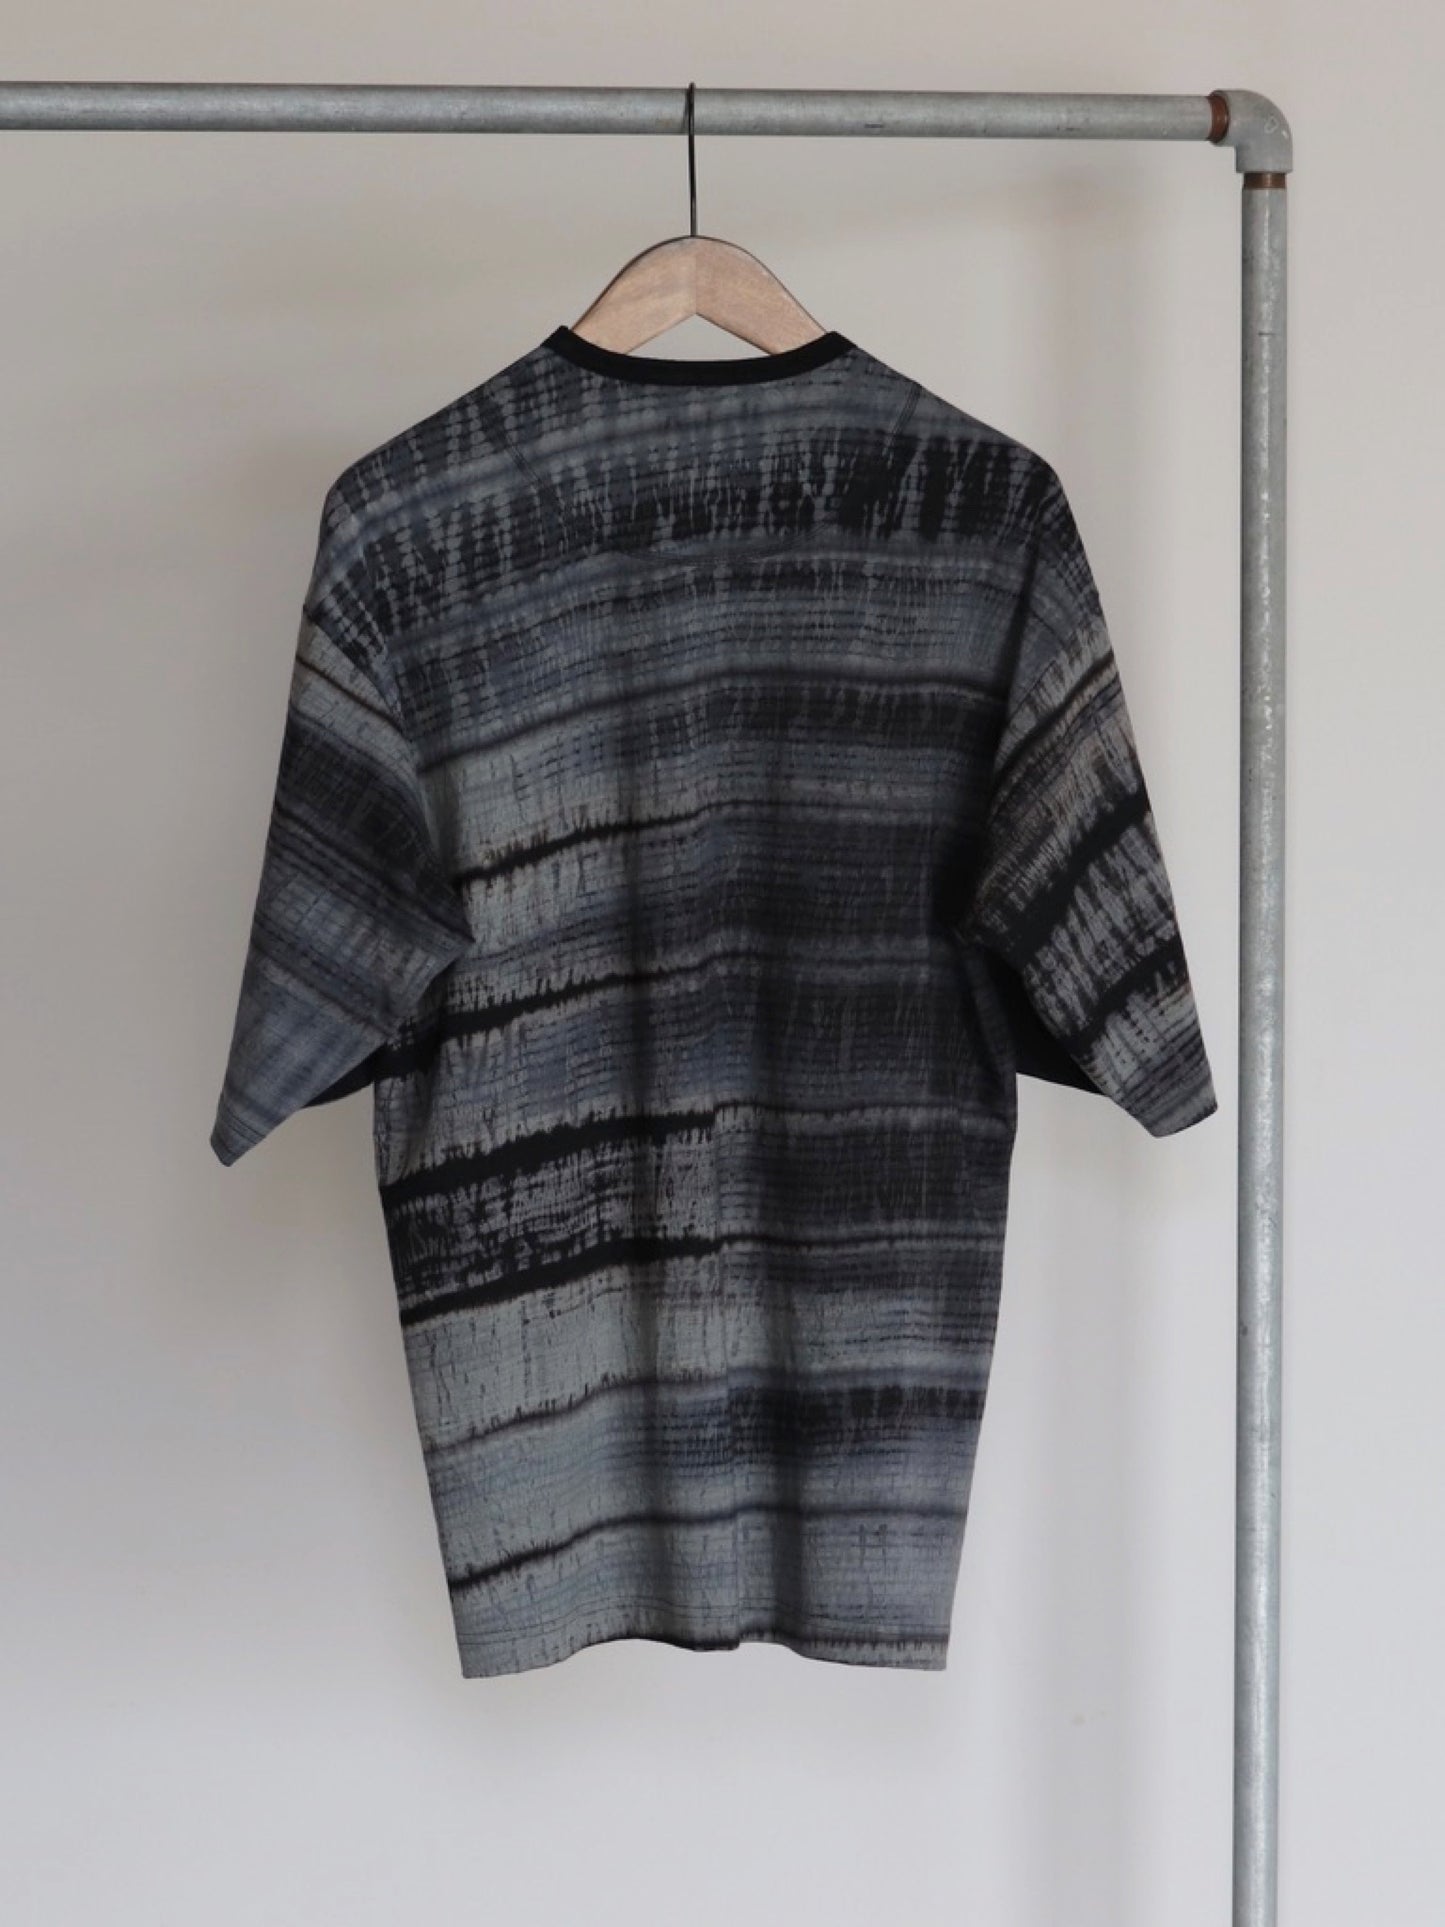 yamauchi-ennsyuku-linen-knit-tshirt-sibori-black-2